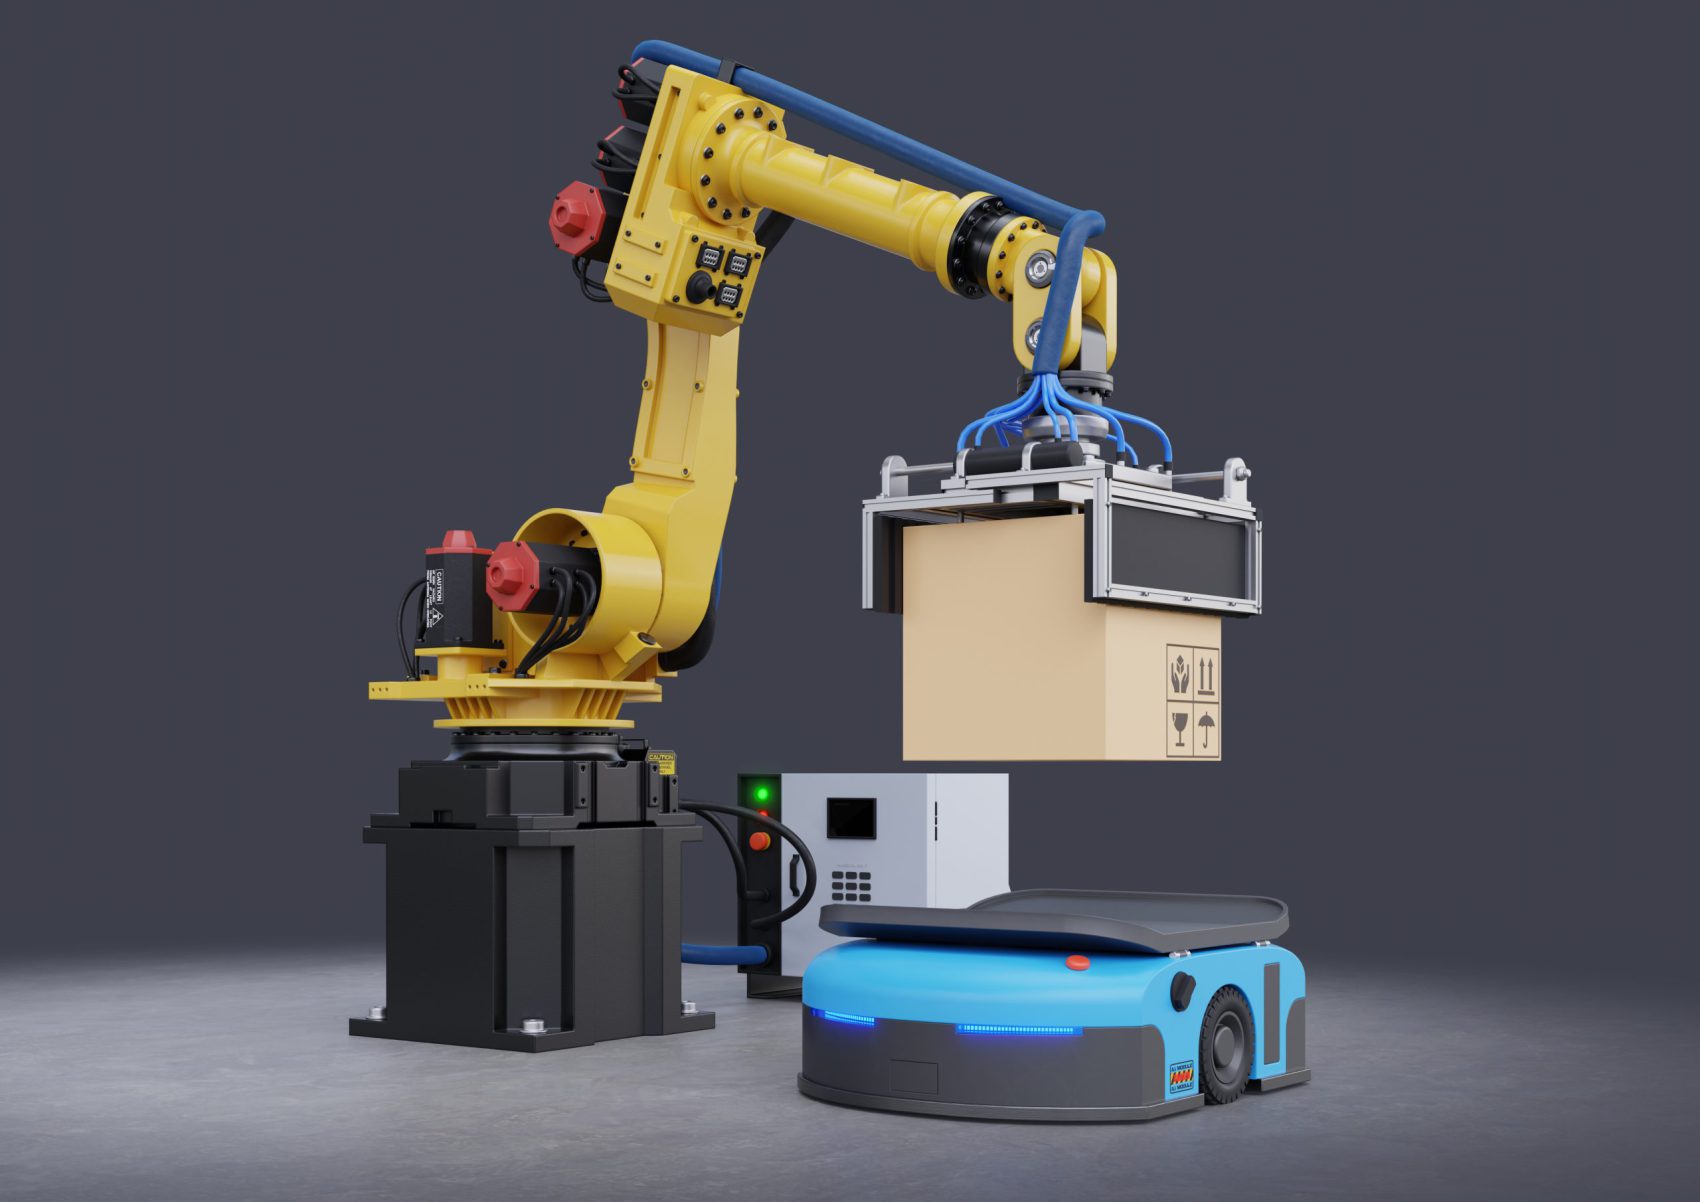 Attuatori Lineari Elettrici - Il futuro dell'automazione industriale braccio robotico e automated guided vehicle